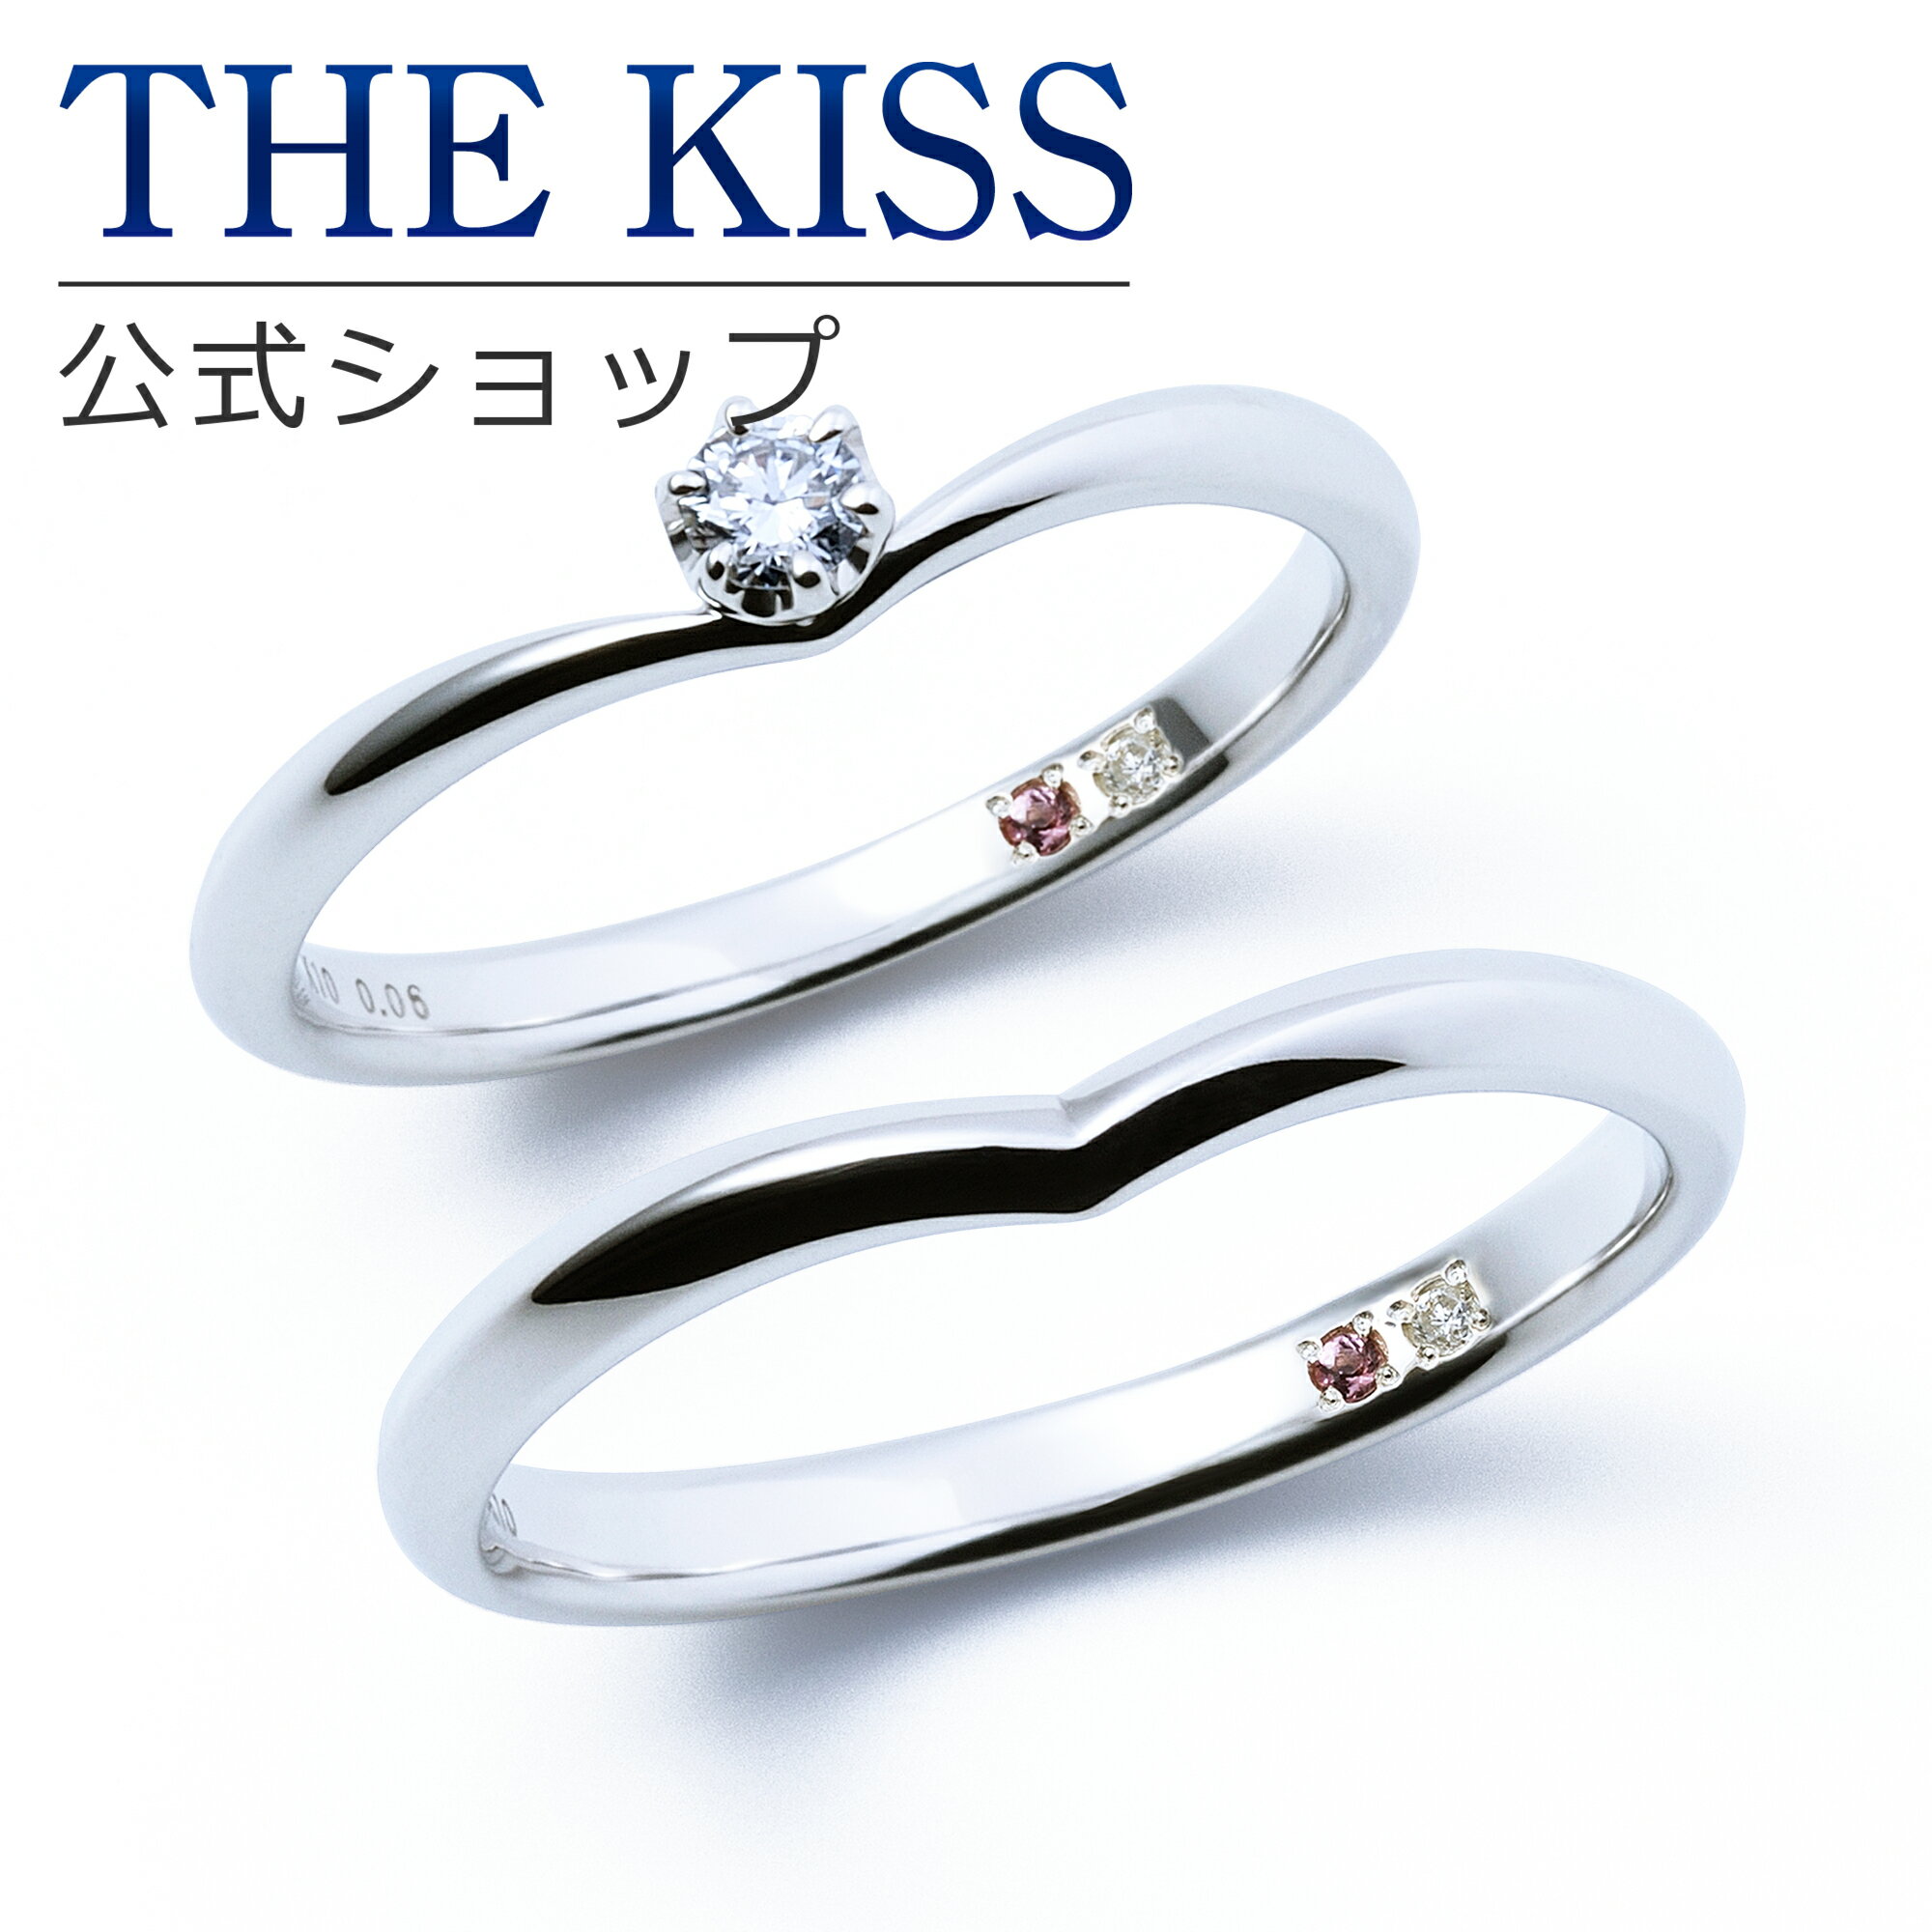 【ラッピング無料】【刻印無料】【THE KISS Anniversary】 K10 ホワイトゴールド マリッジ リング 結婚指輪 ペアリング wg THE KISS ザキッス リング・指輪 7621122001A-7621122002A 誕生石 セット シンプル 男性 女性 2個セット 母の日